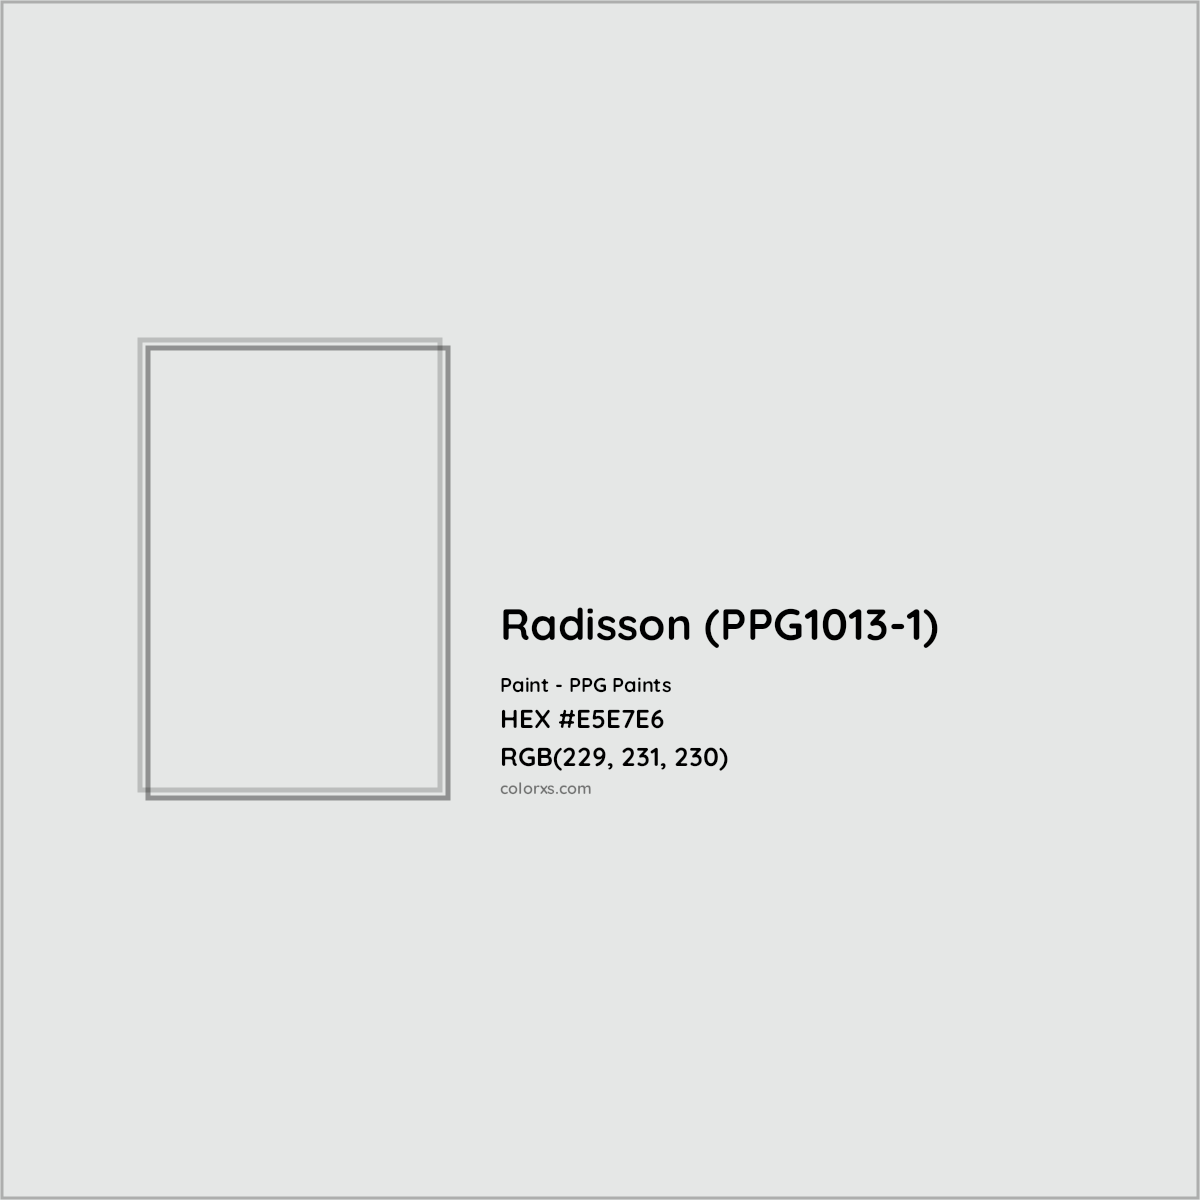 HEX #E5E7E6 Radisson (PPG1013-1) Paint PPG Paints - Color Code